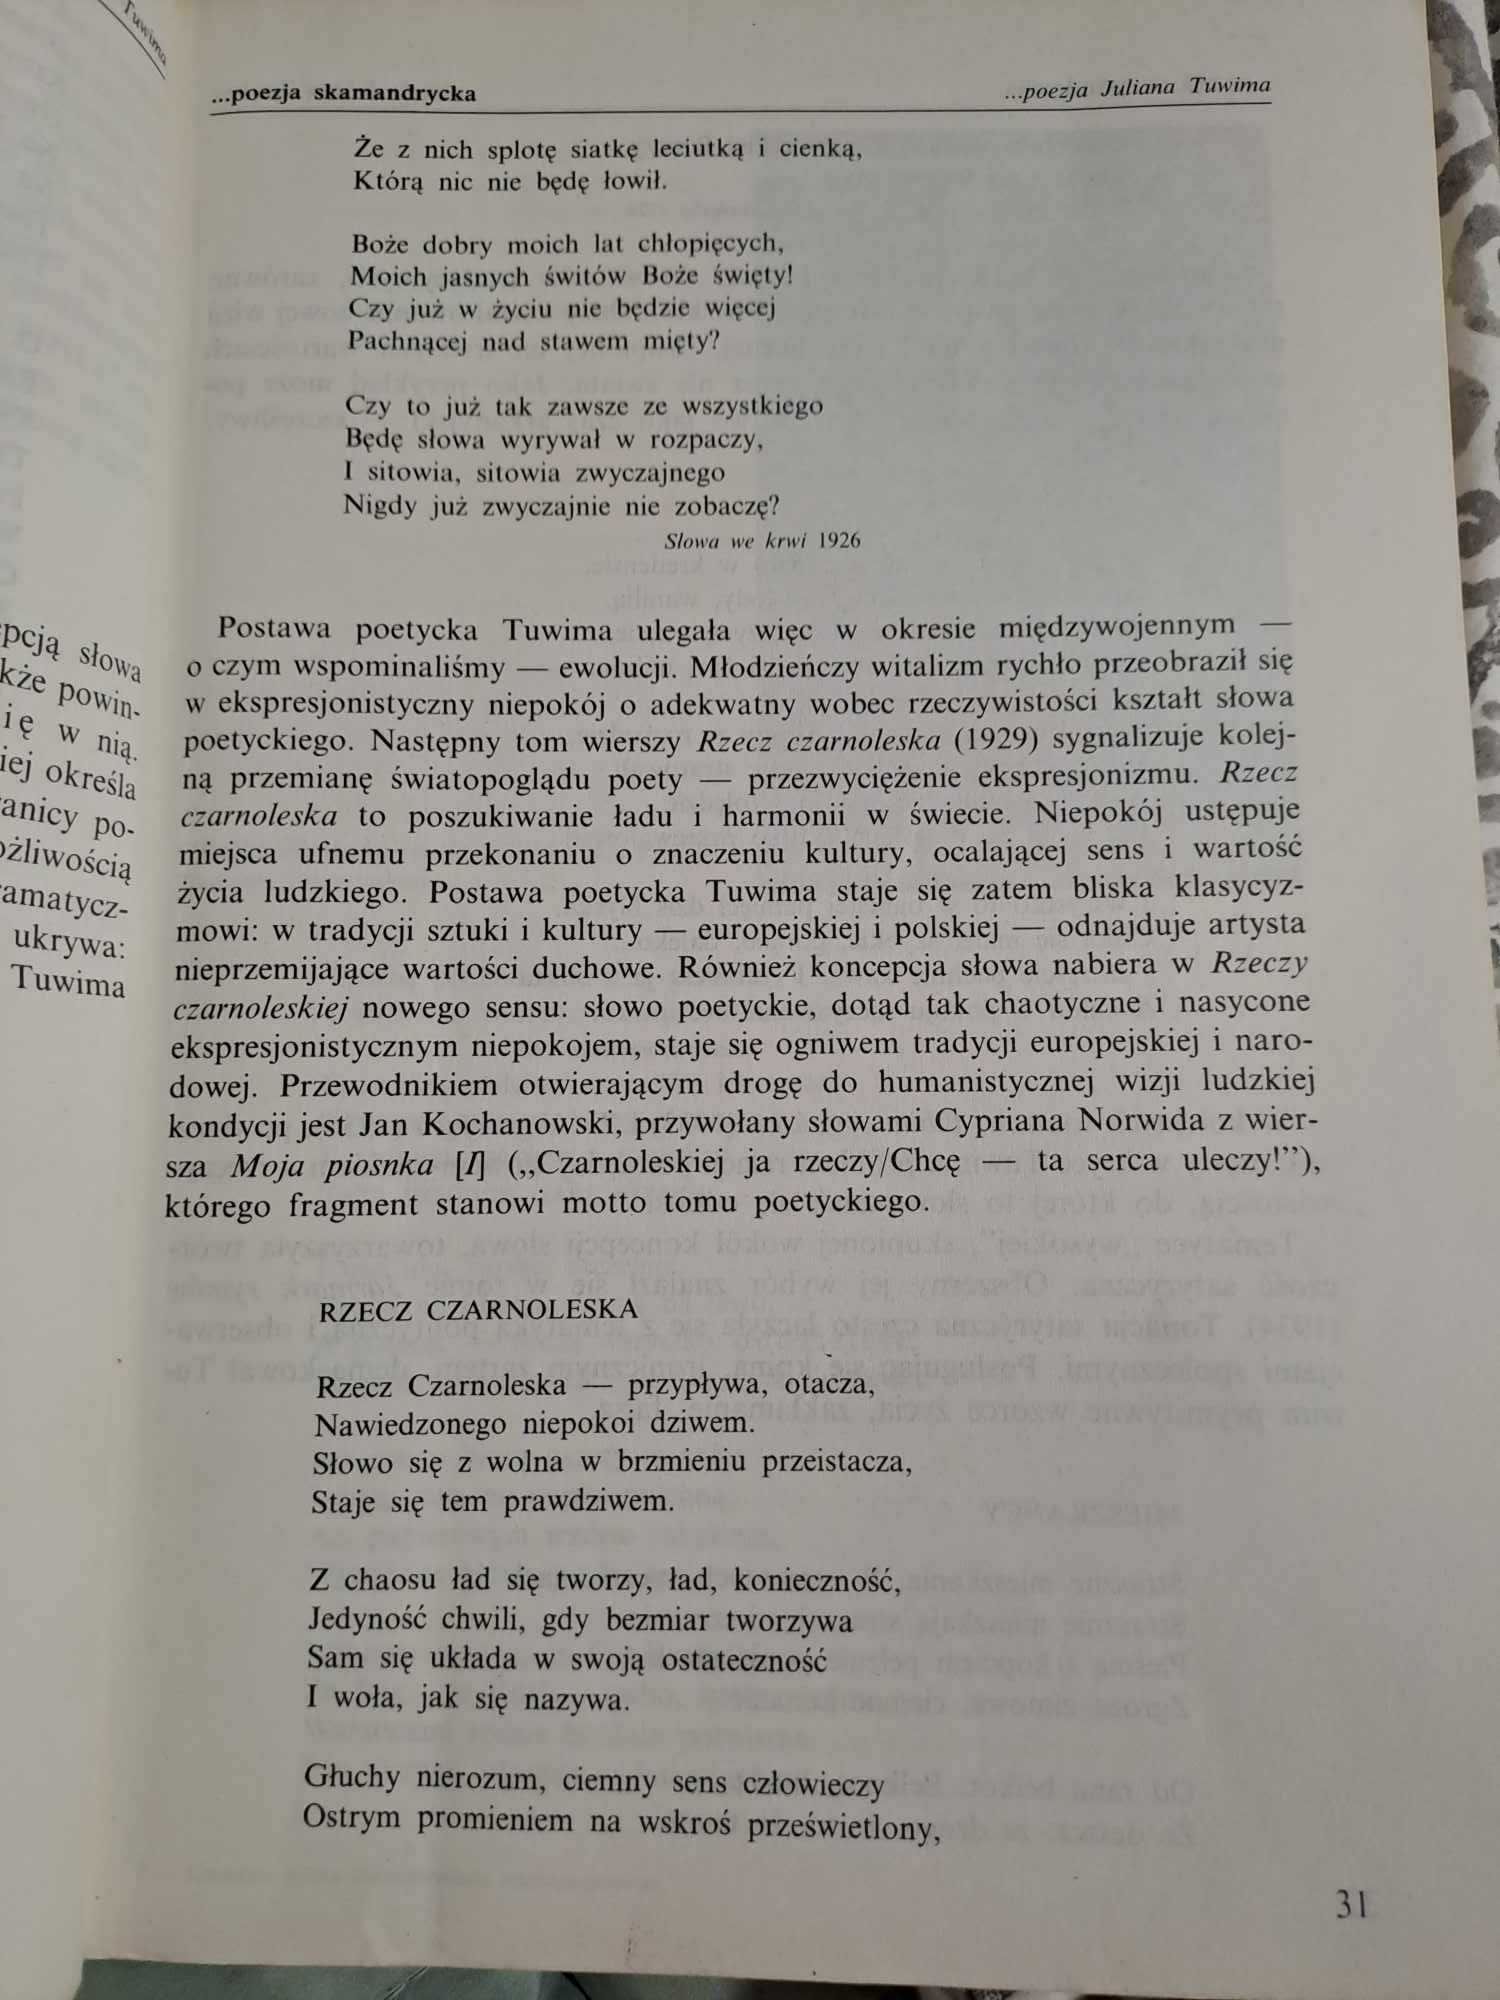 Literatura polska dwudziestolecia... kl. 3 Wroczyński 1994